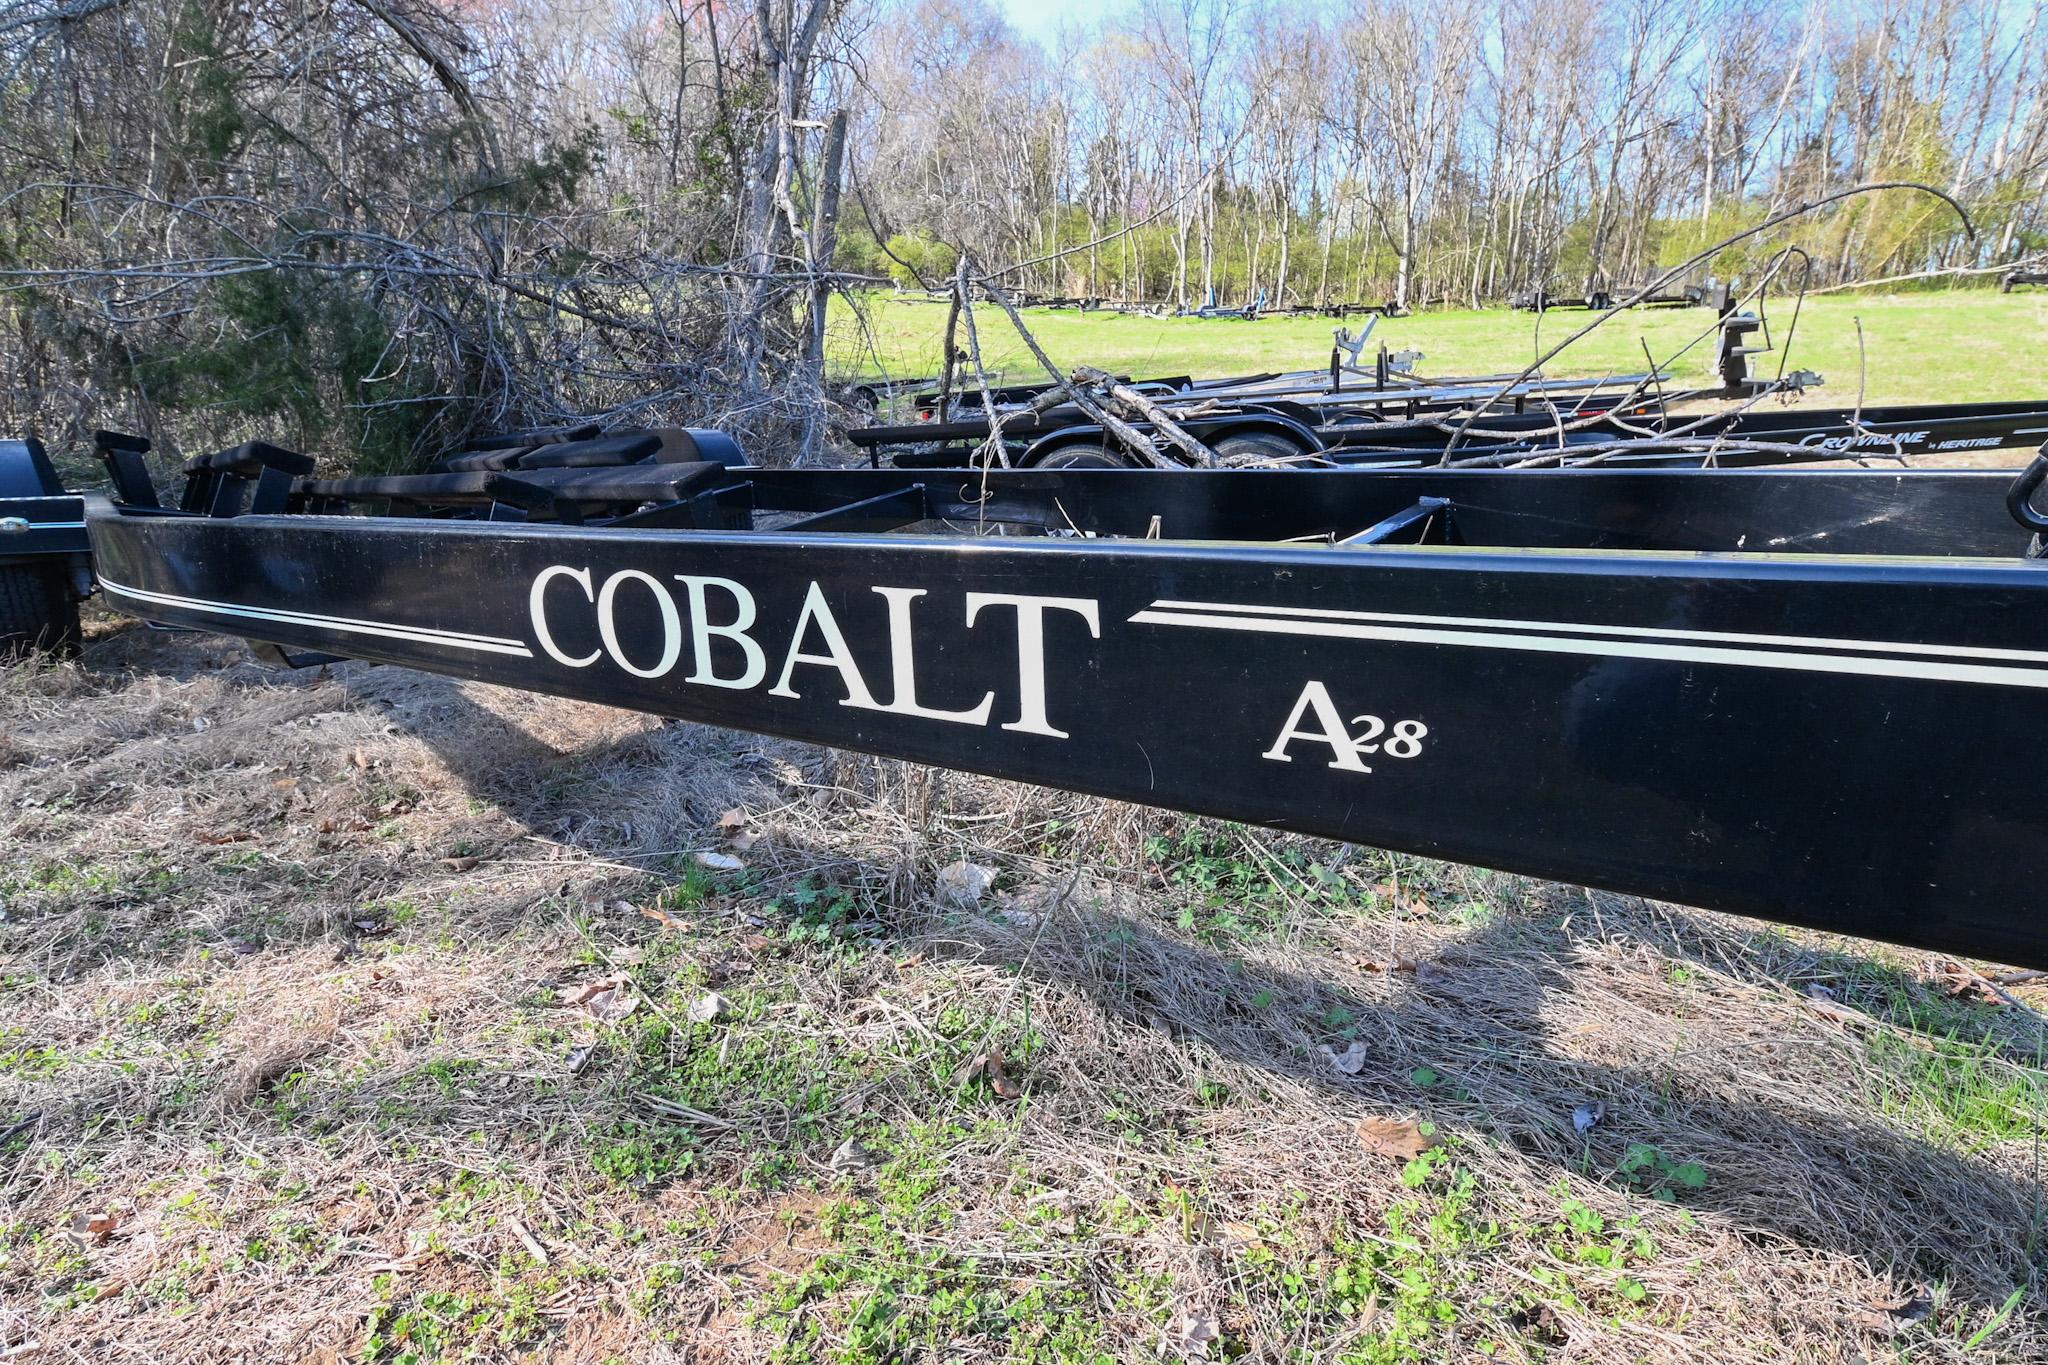 2012 Cobalt A28